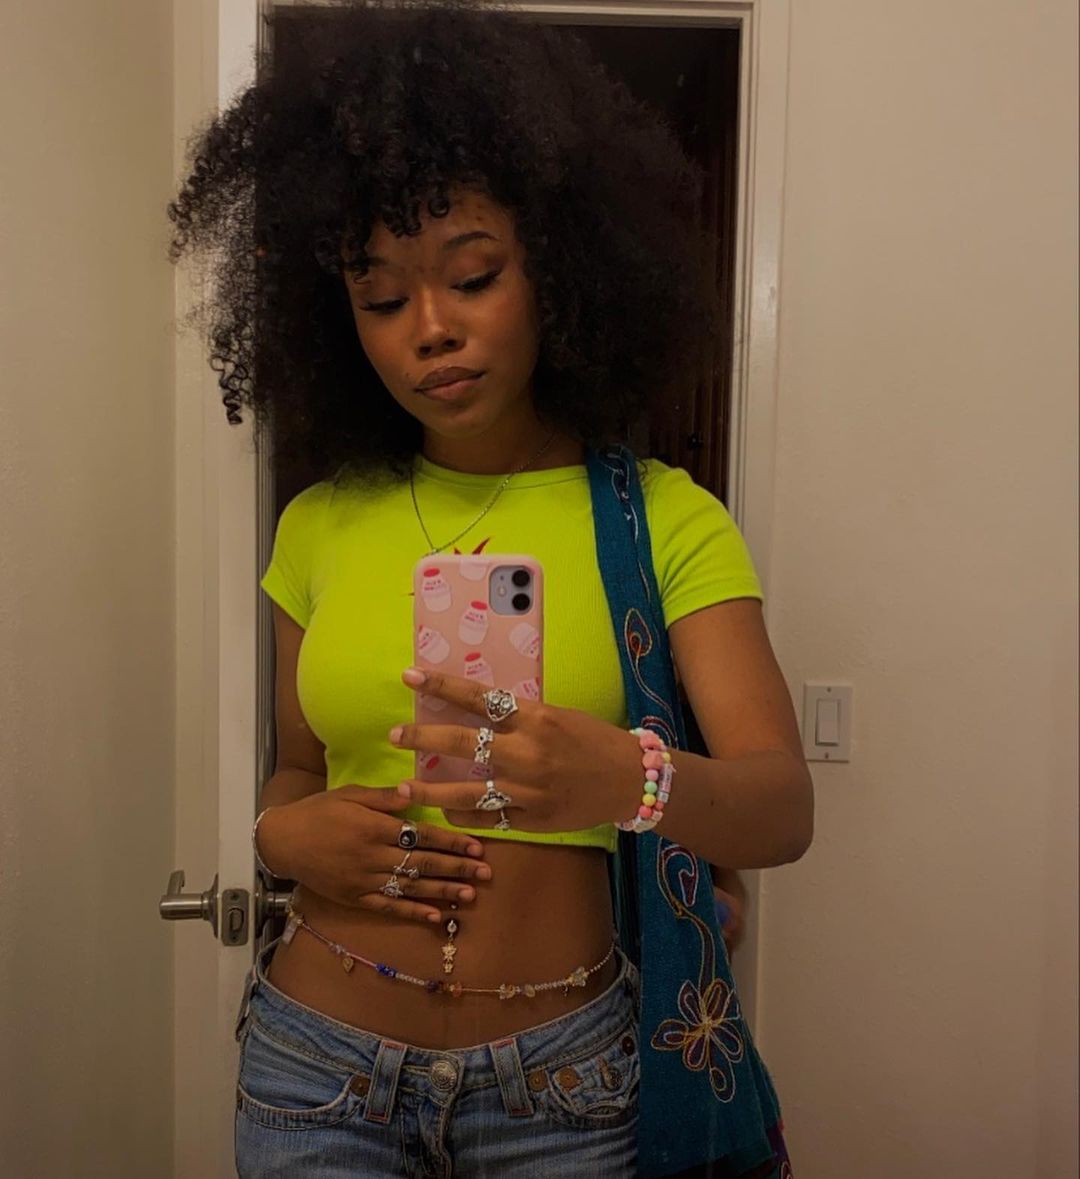 Garota tirando foto com celular em frente ao espelho. Ela usa um top cropped verde neon, calça jeans de cintura baixa, bolsa azul e cinto de miçangas na barriga.